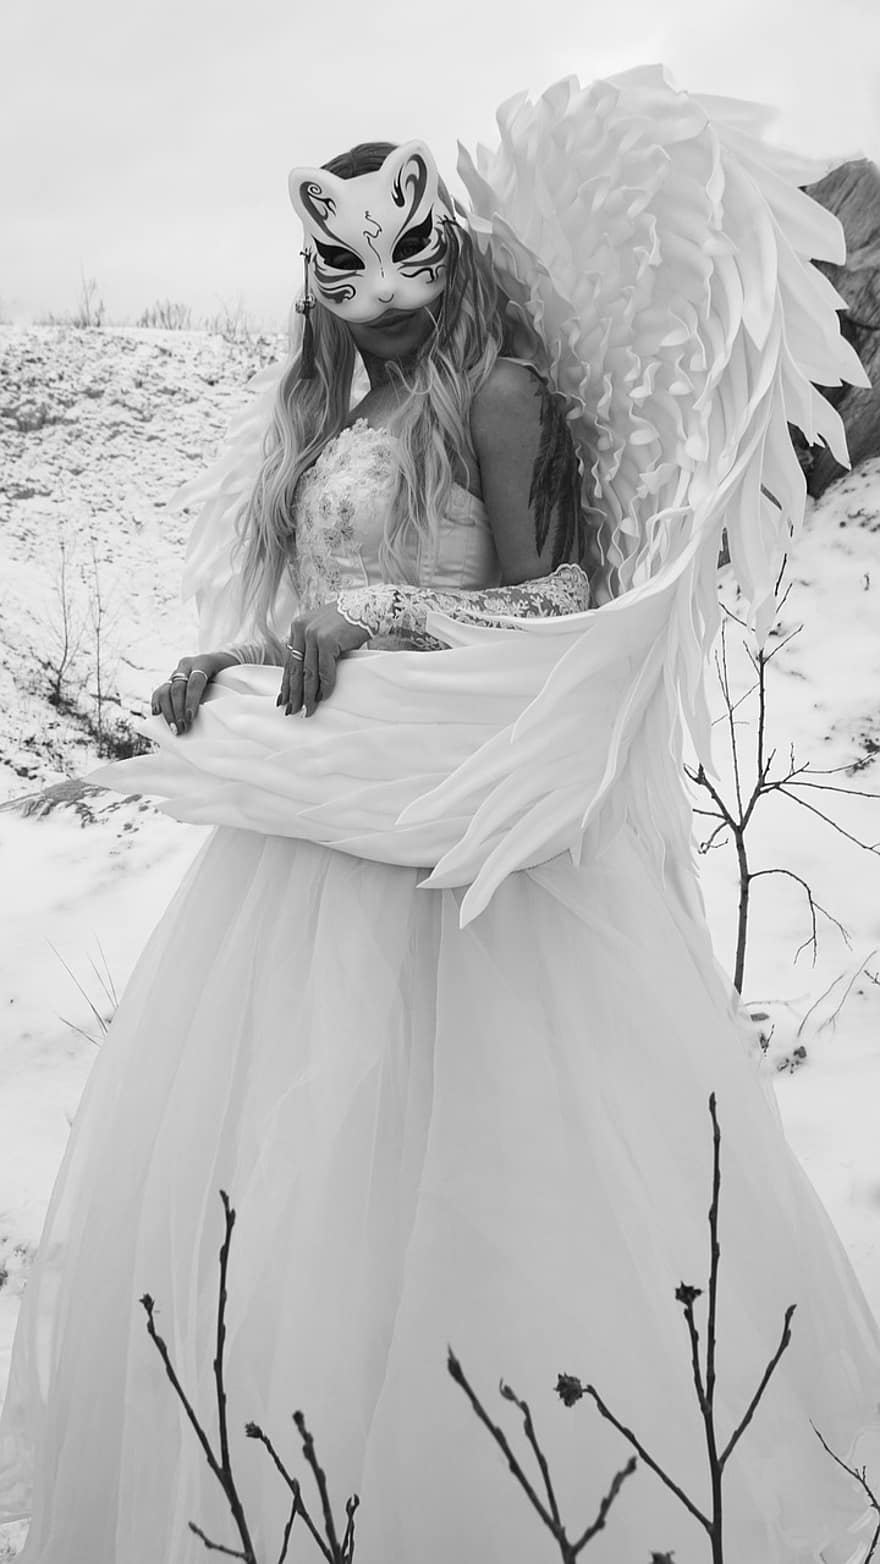 disfressa, dona, ales, vestit, màscara, història, fantasia, místic, hivern, neu